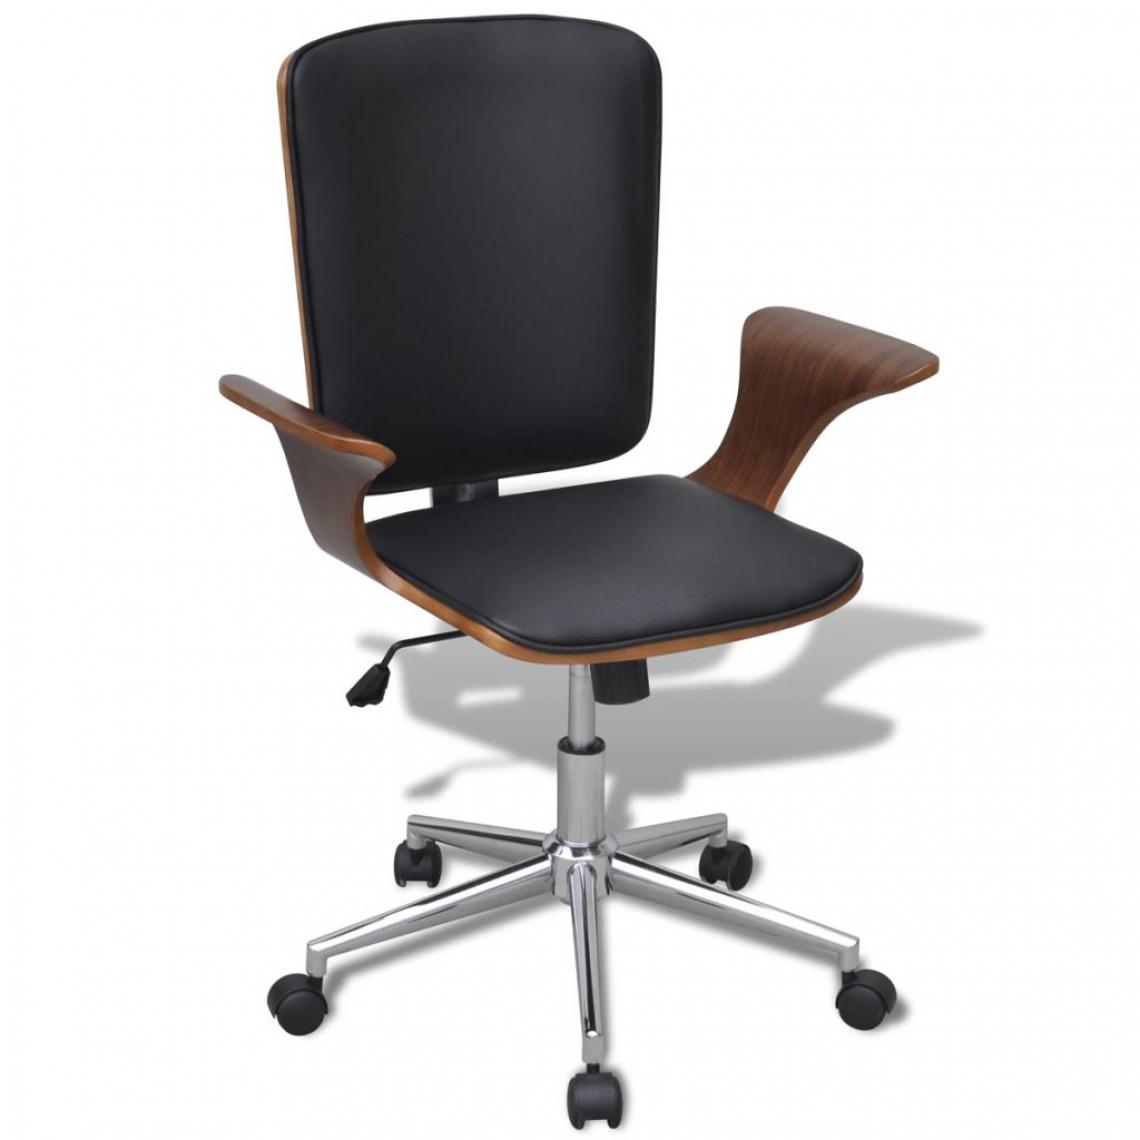 Chunhelife - Chaise de bureau rotative en bois cintré avec revêtement en faux cuir - Chaises